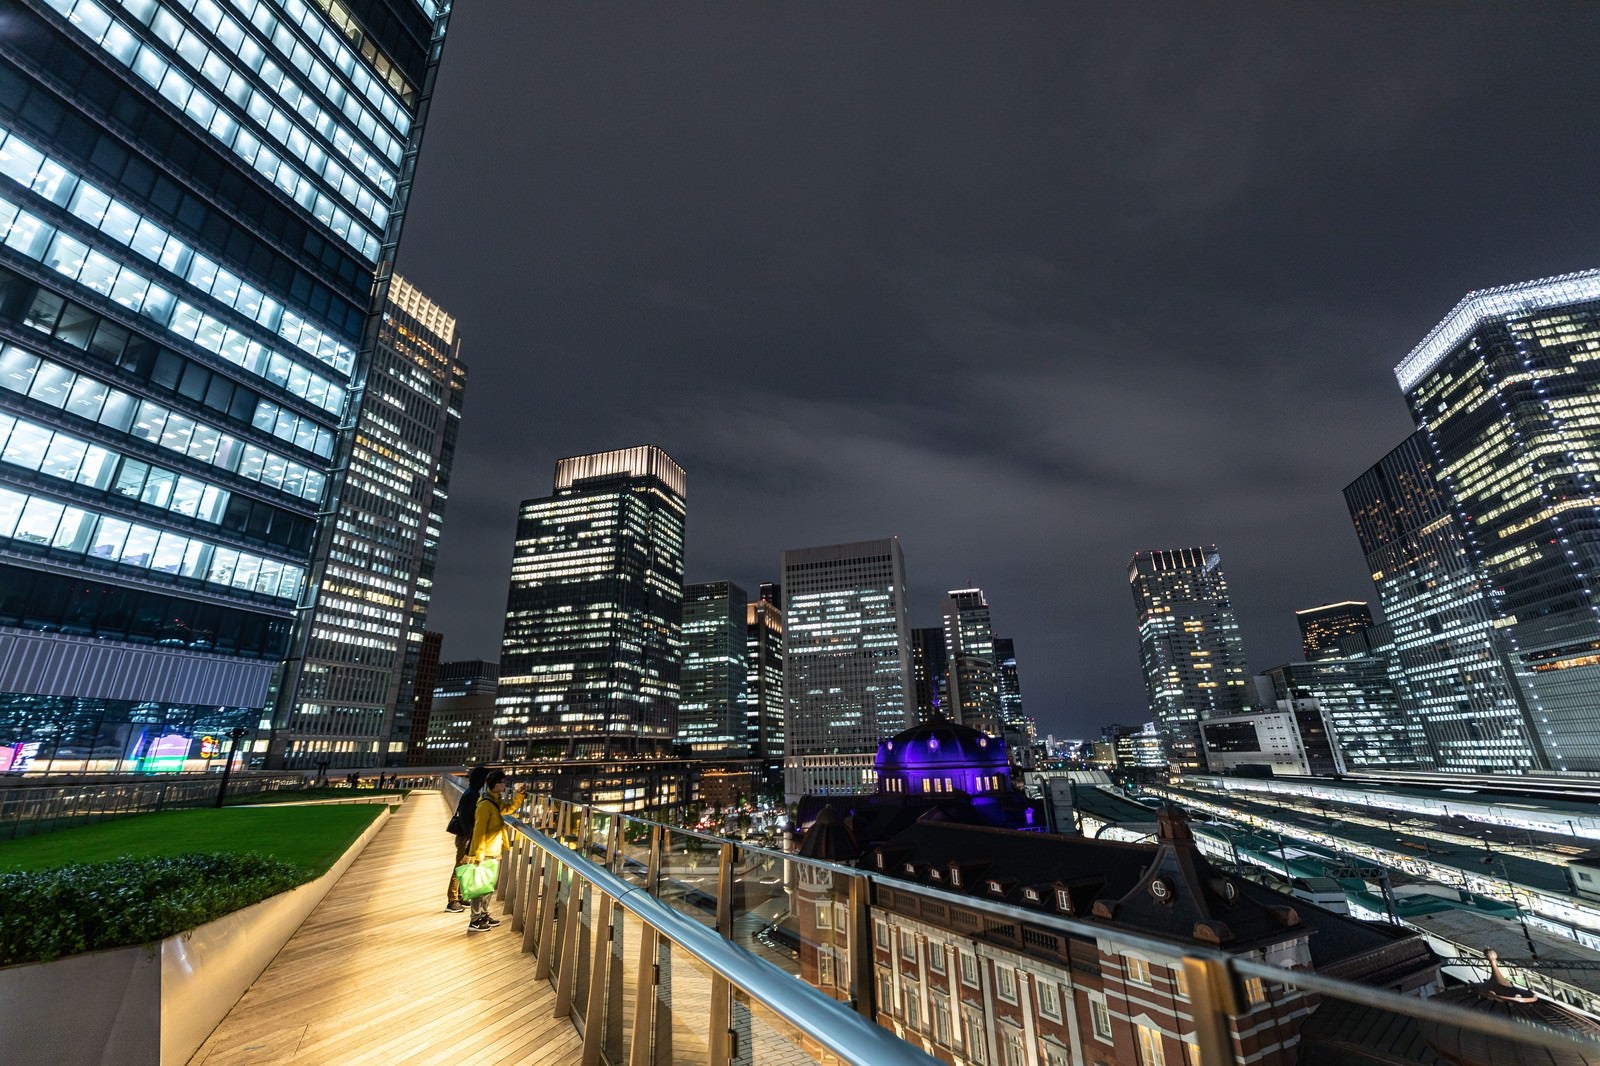 「KITTEガーデンから望む東京ビル群の夜景」の写真